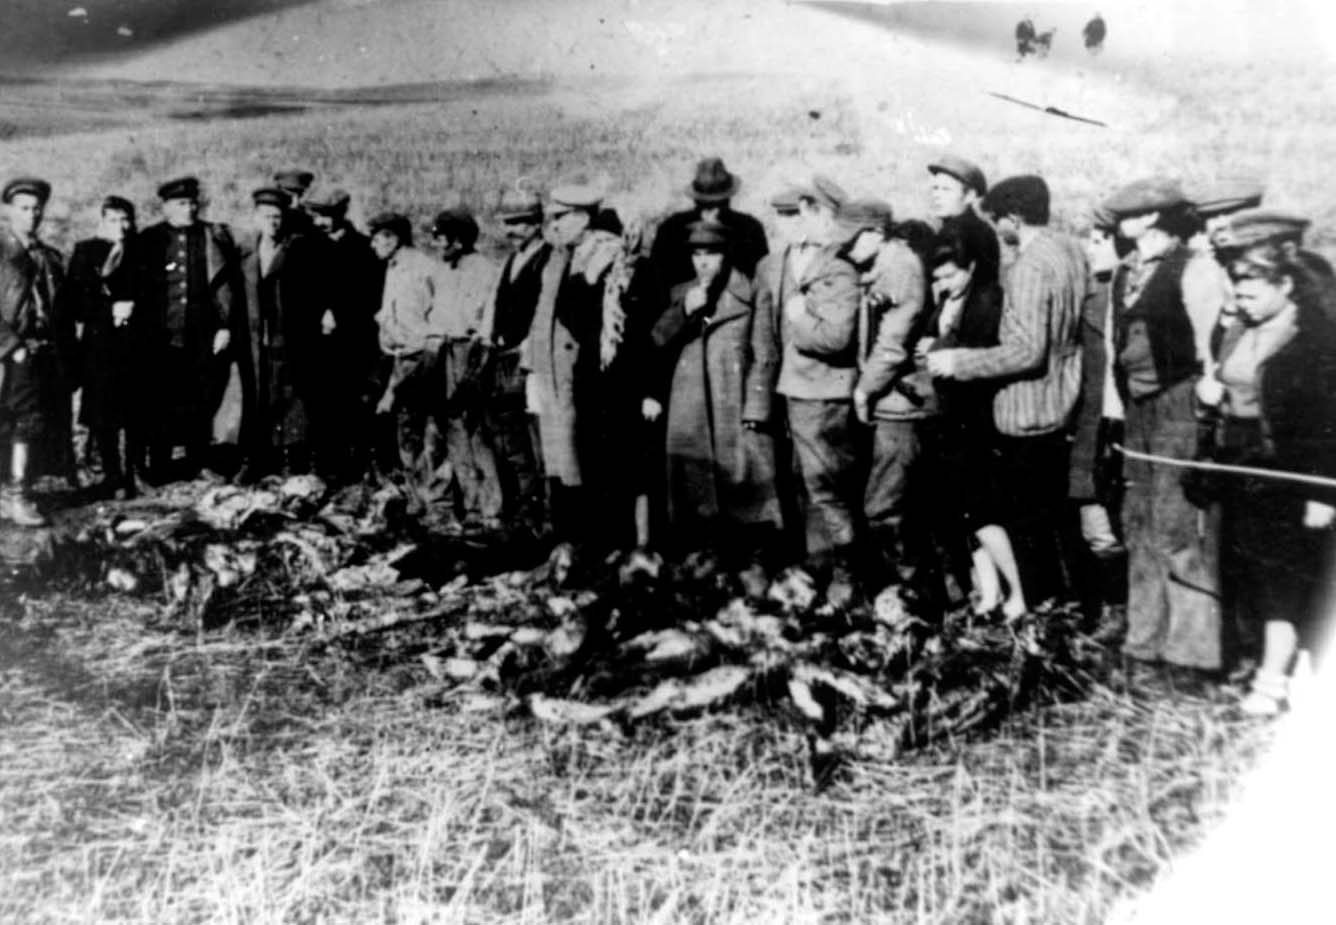 La banda de Hershke – judíos que salvaron judíos